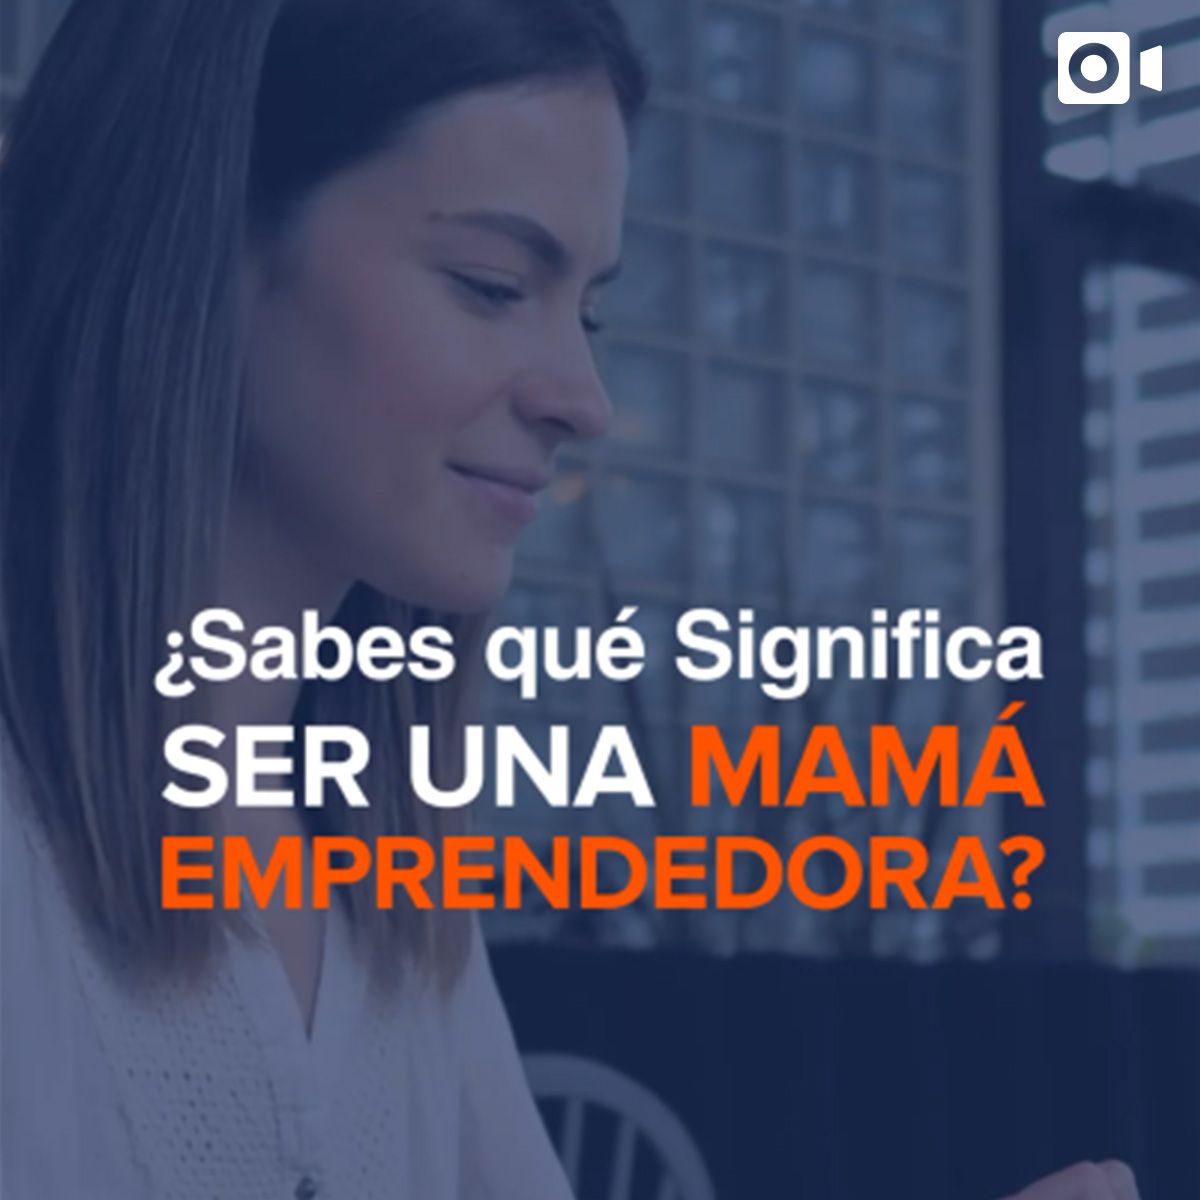 ¿Sabes qué Significa ser una Mamá Emprendedora?  ¡Apréndelo!  Clase Súper Mamás Emprendedora Regístrate Ya  Online viernes 28 de enero 10:00 a. m.